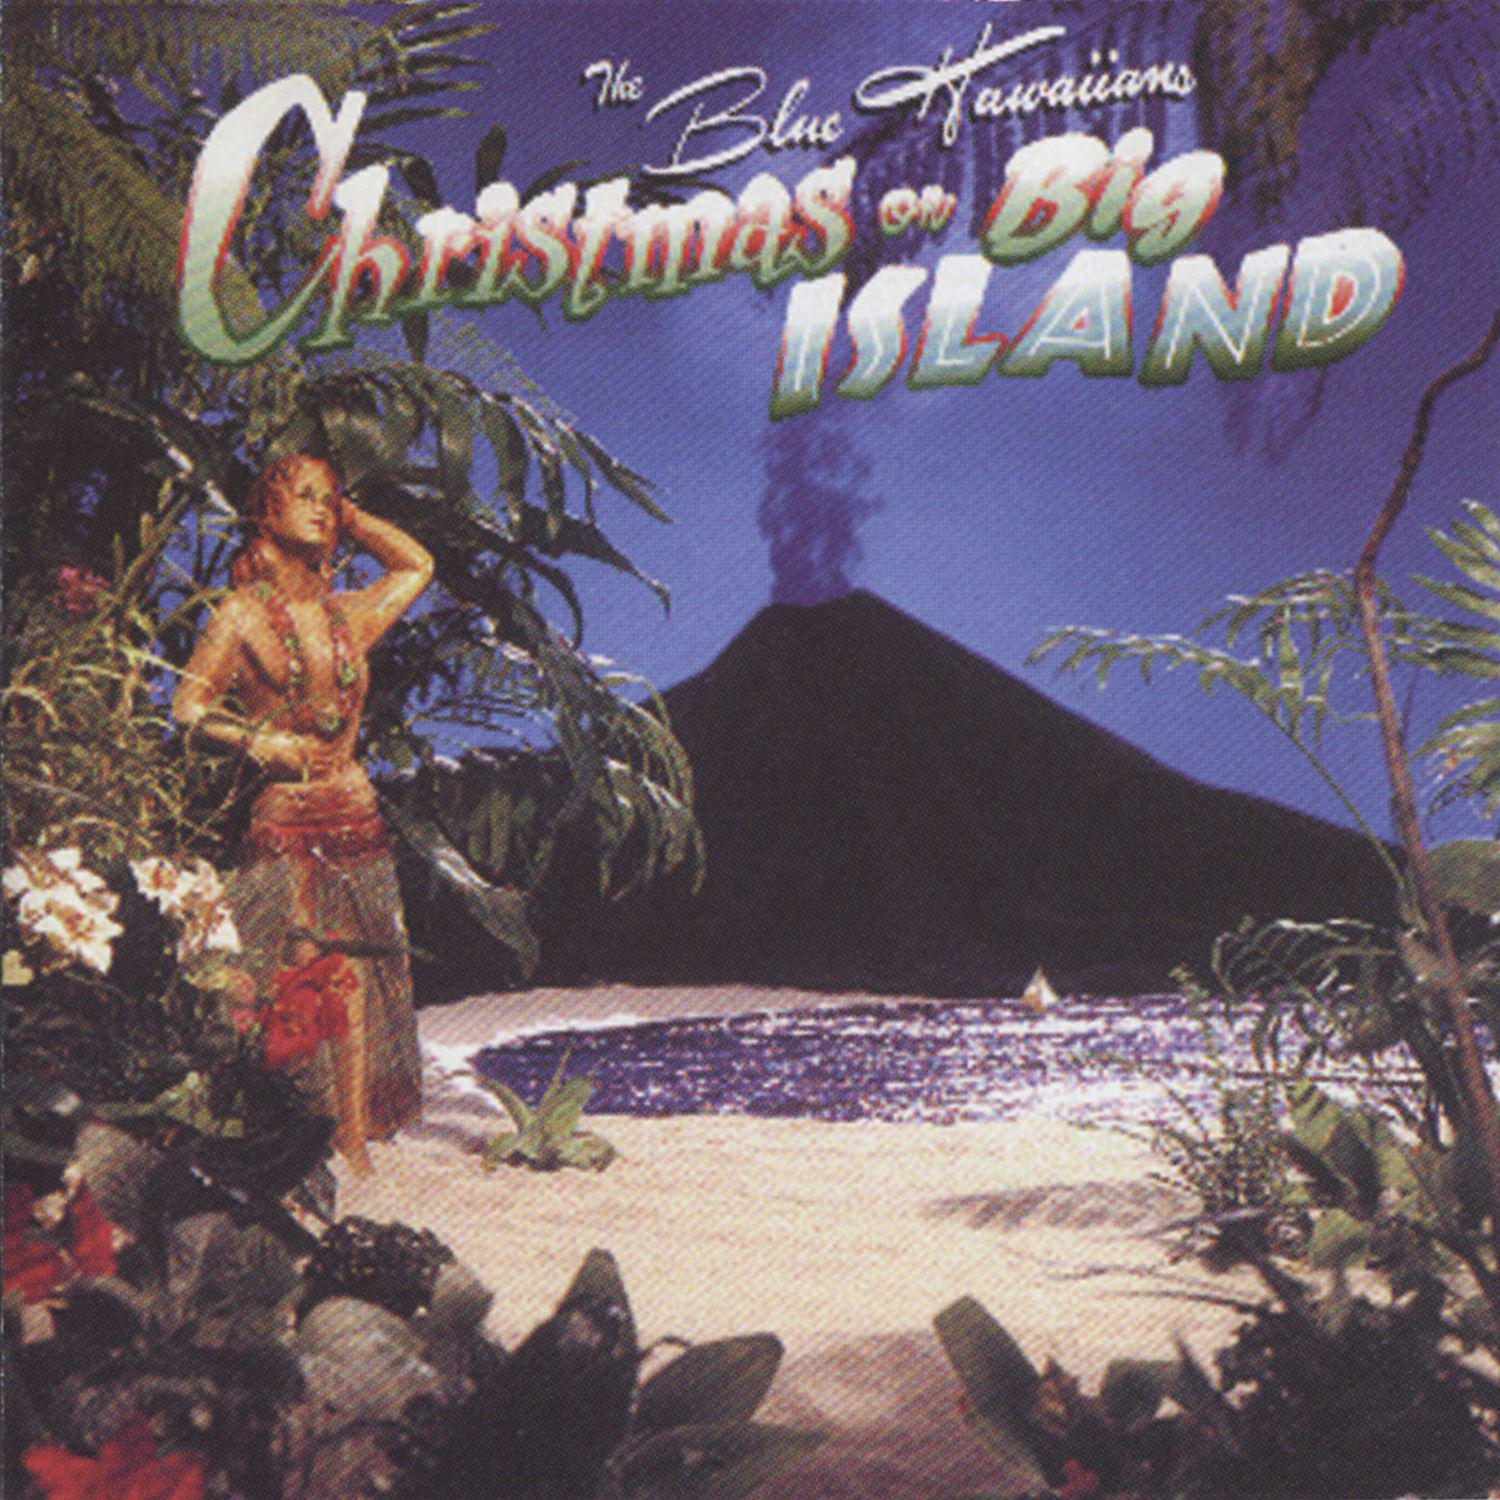 The Blue Hawaiians - Blue Christmas